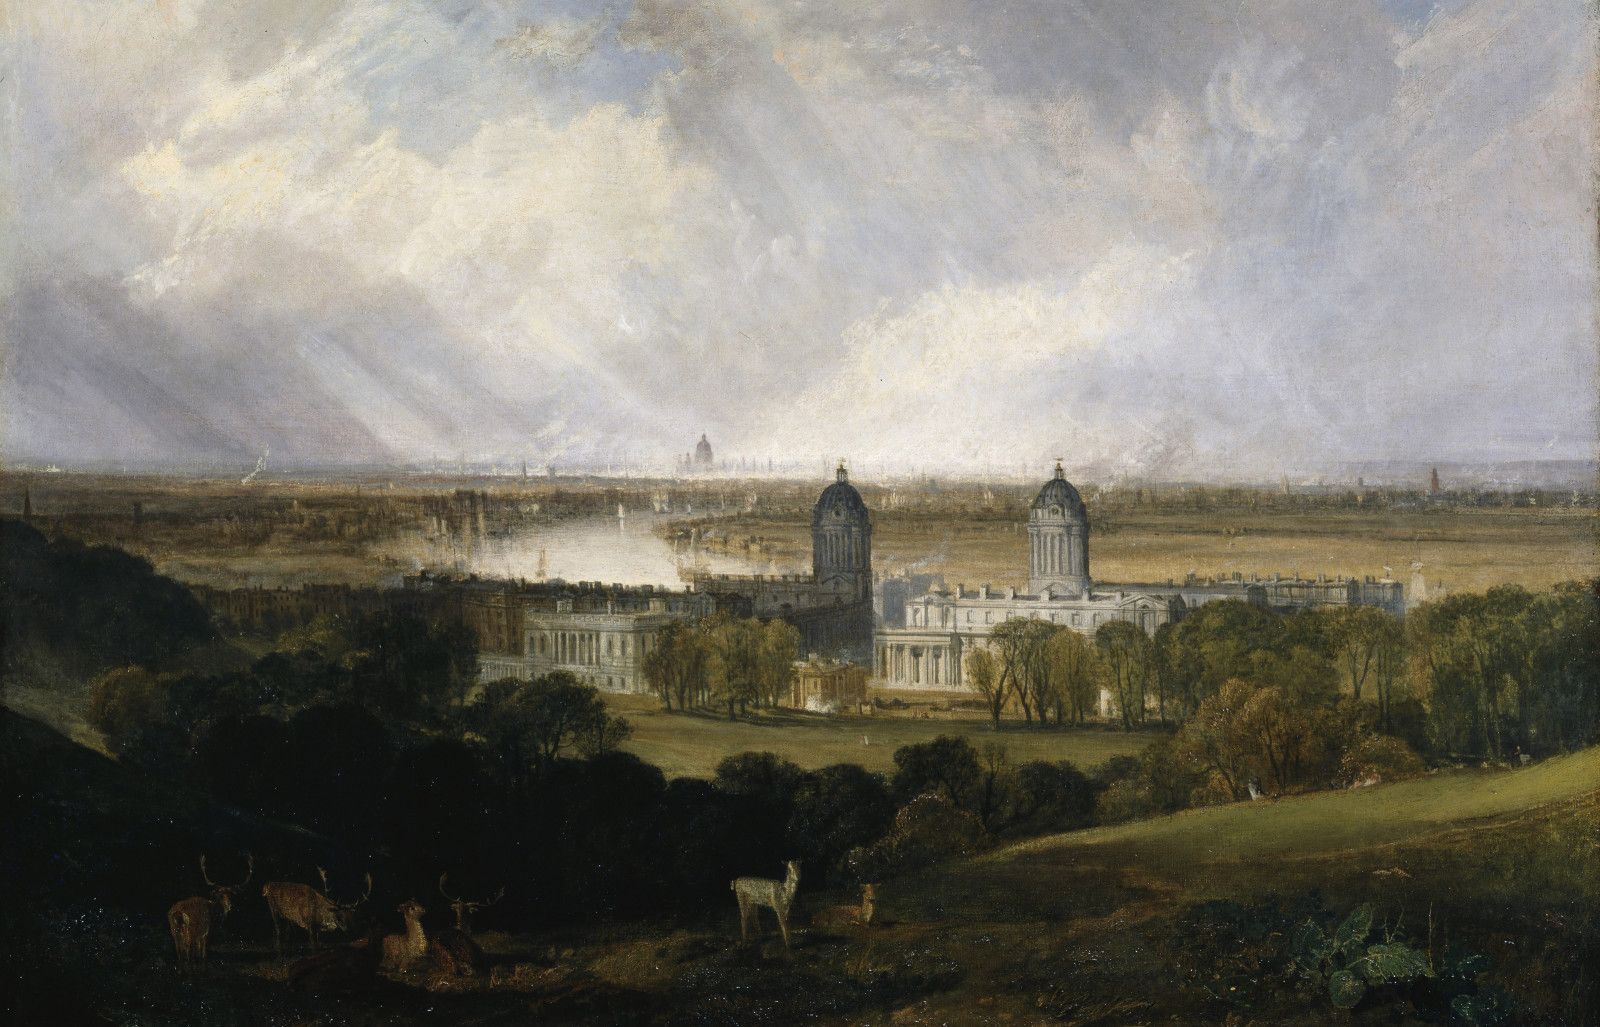 công viên, phong cảnh, cây, hình ảnh, động vật, Lâu đài, William Turner, Luân Đôn từ công viên Greenwich